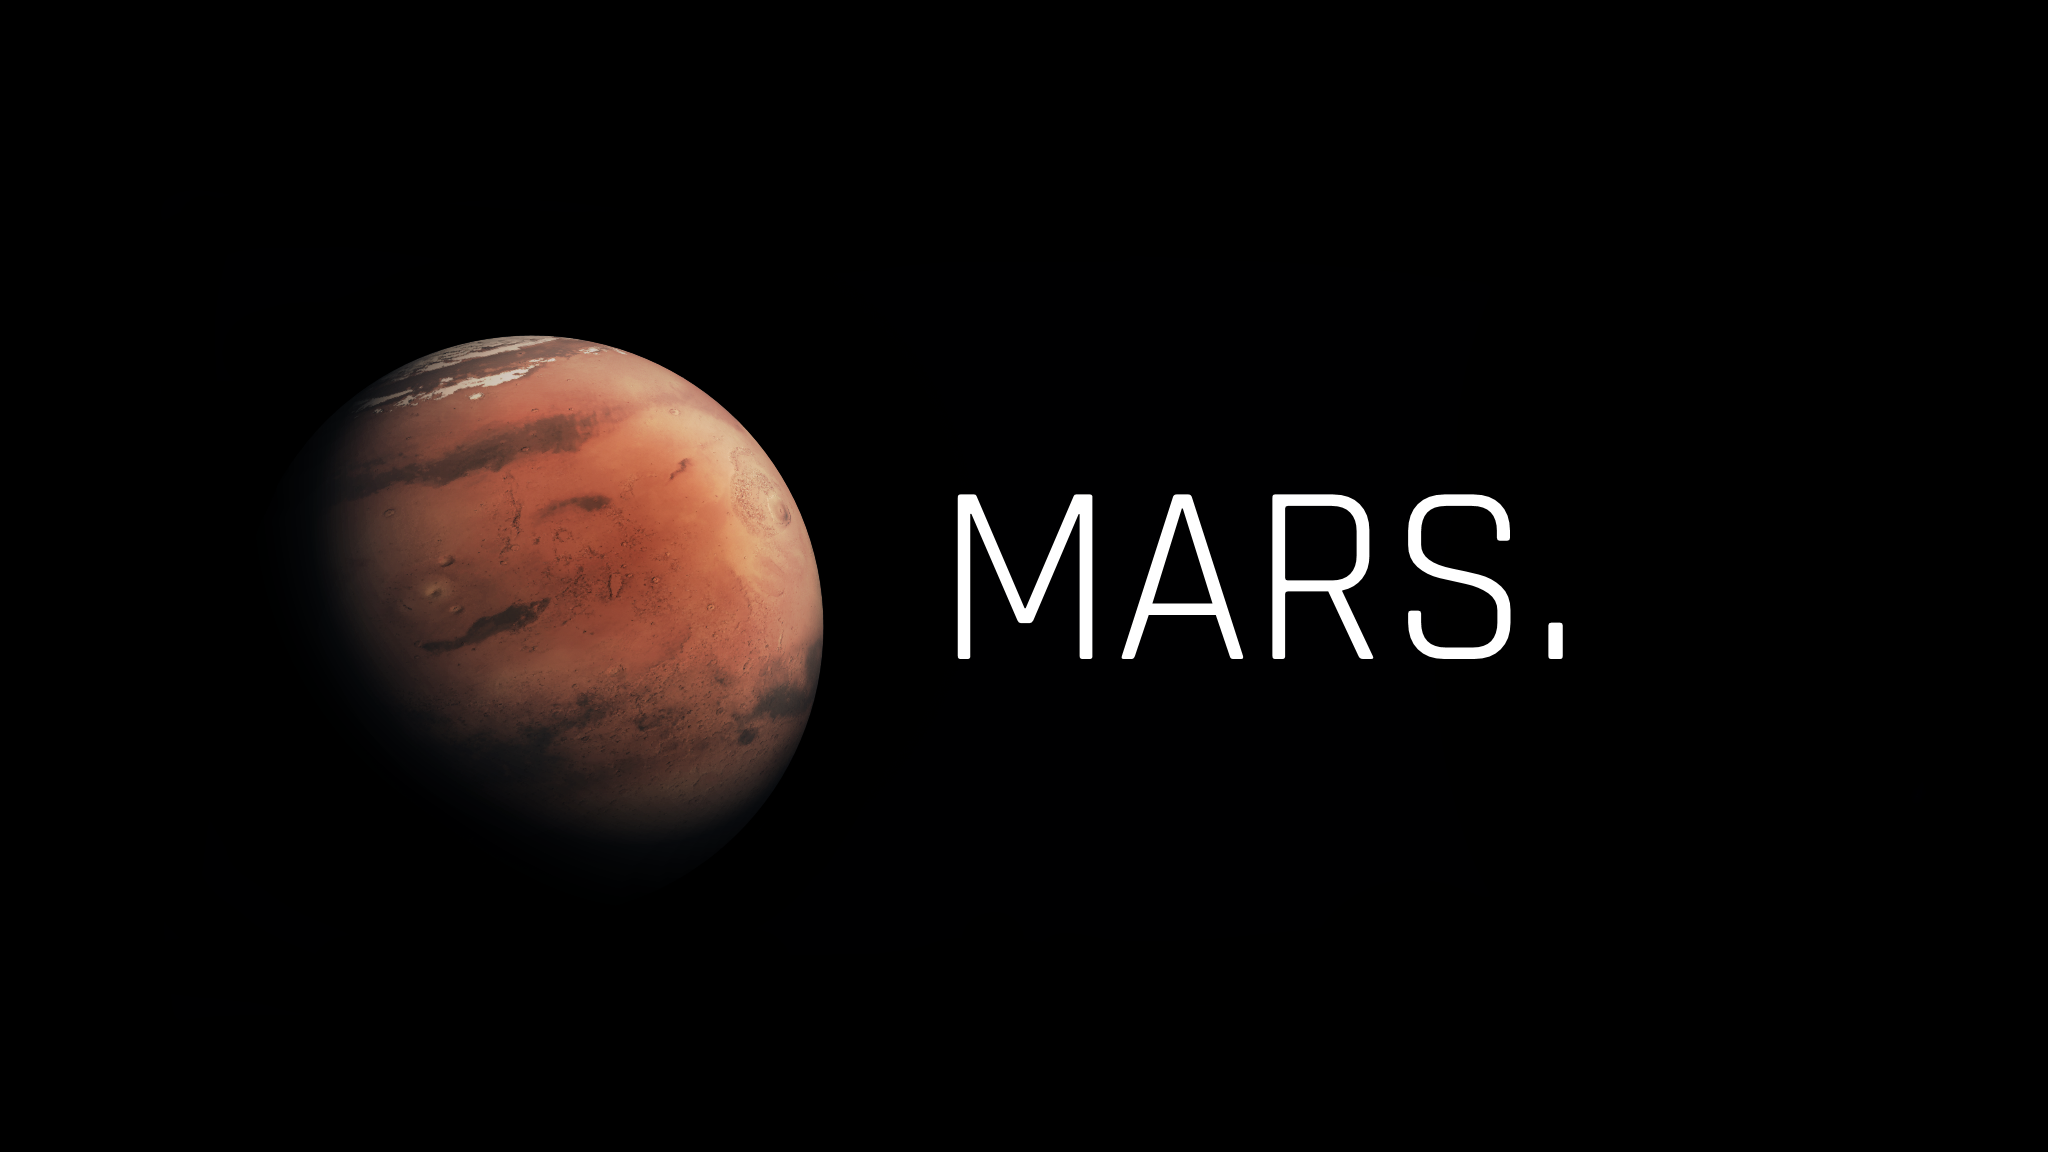 Mars super wallpapers. Марс иллюстрация. Планета Марс с надписью. Обои Xiaomi Планета Марс. Марс Планета MIUI 12.